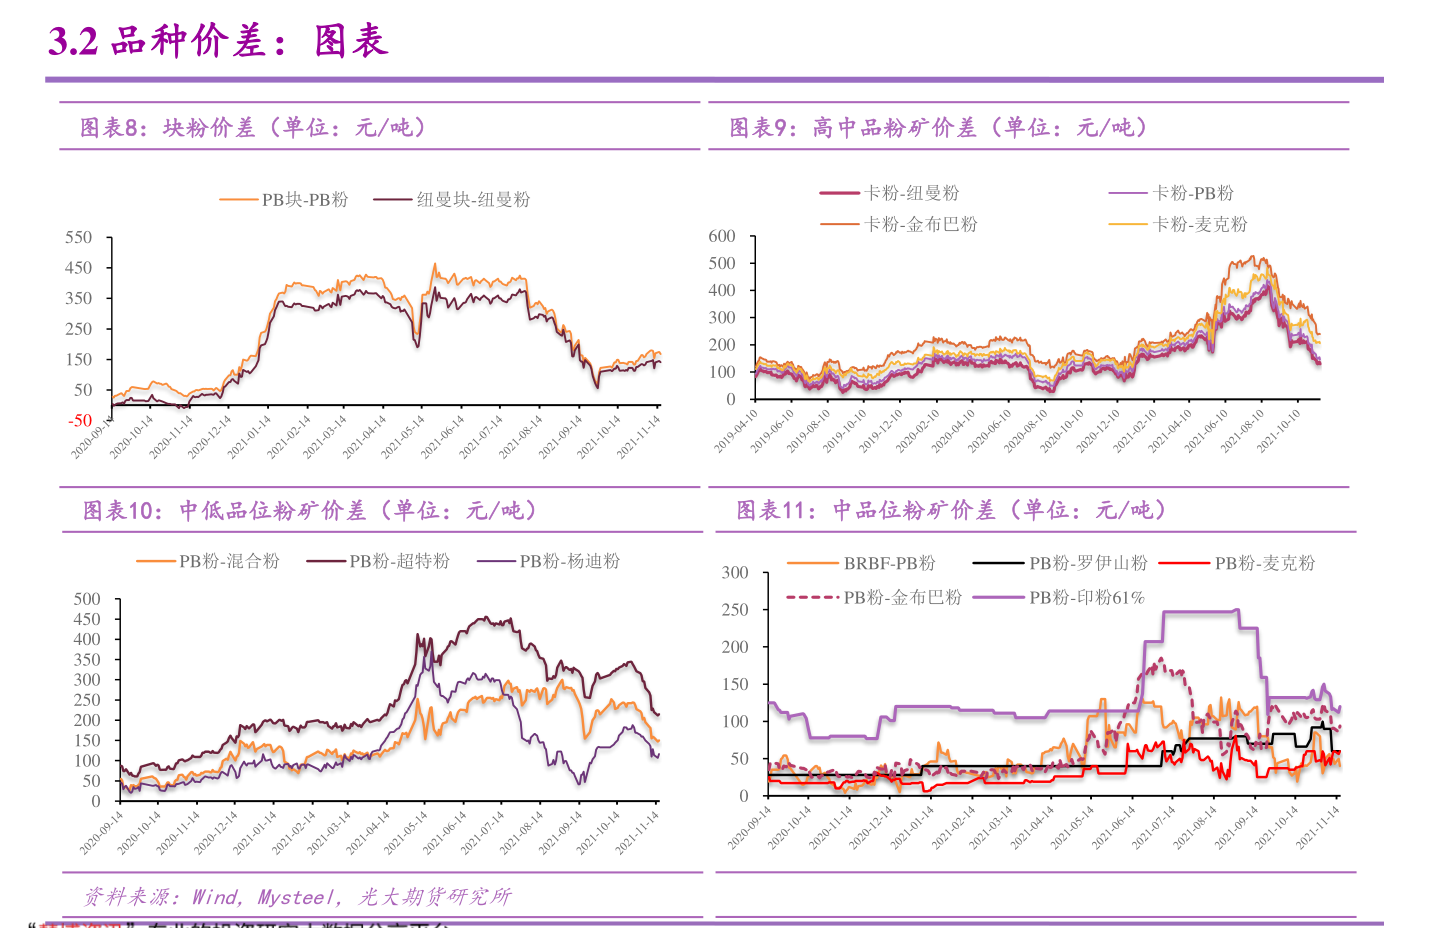 中日韩自贸区概念股投资指南 中日韩自贸区相关概念股一览